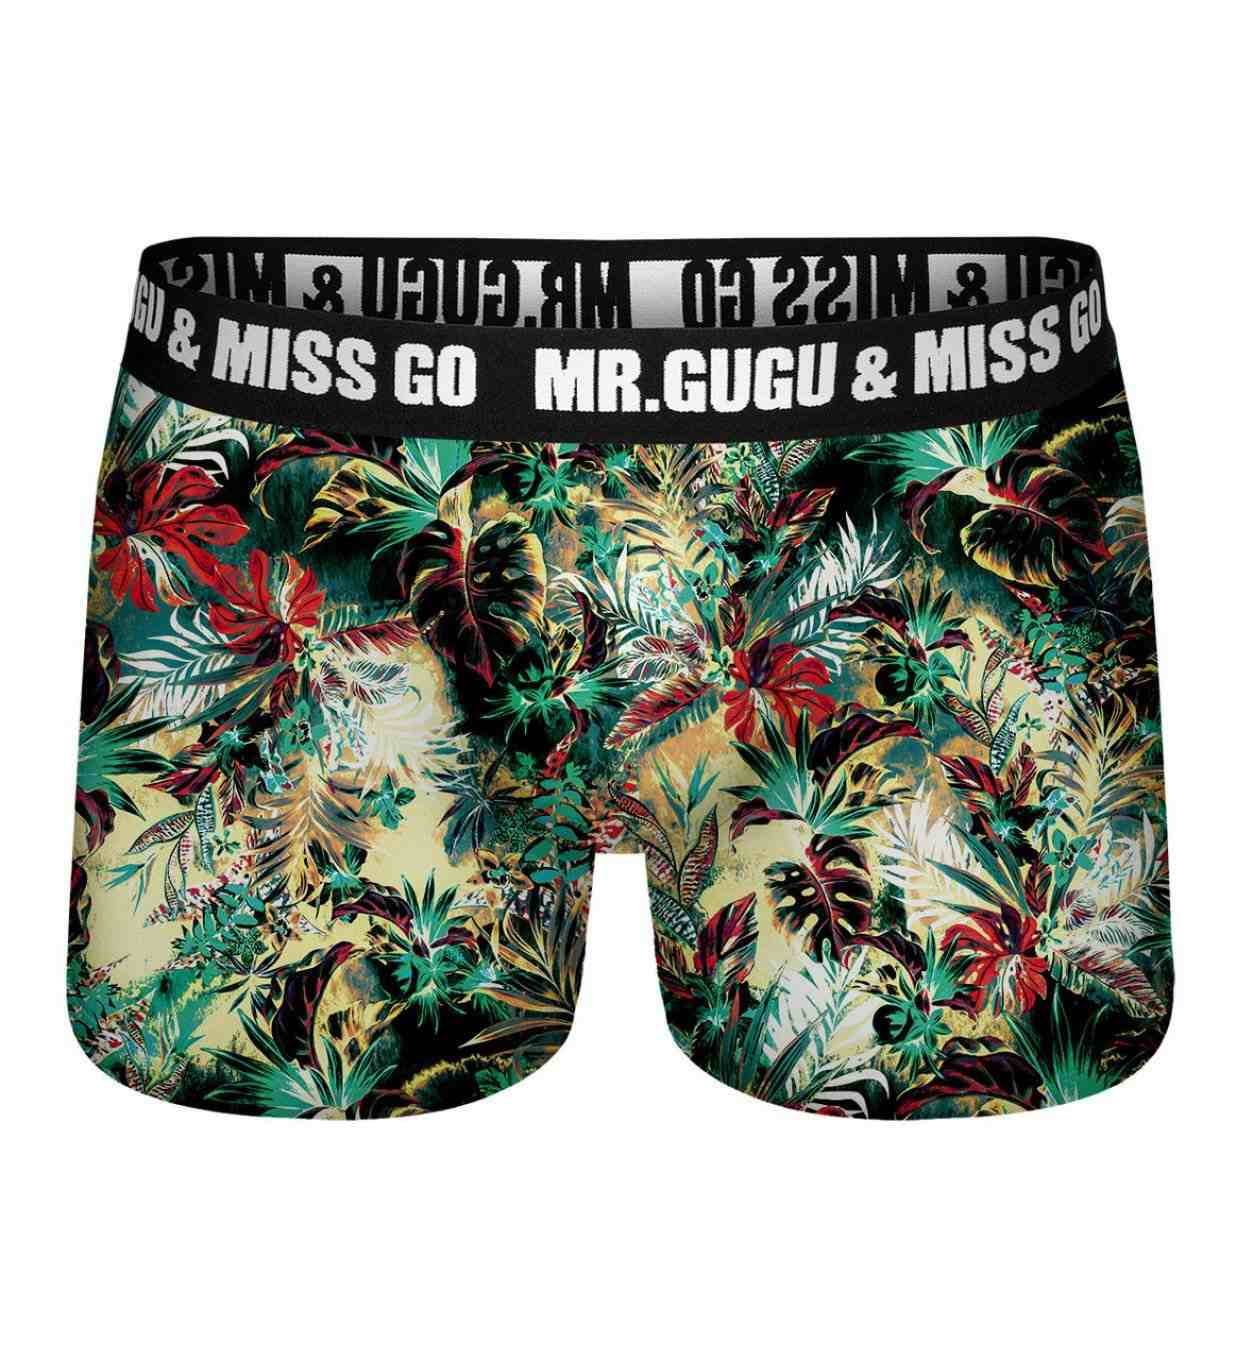 Mr. GUGU & Miss GO Underwear